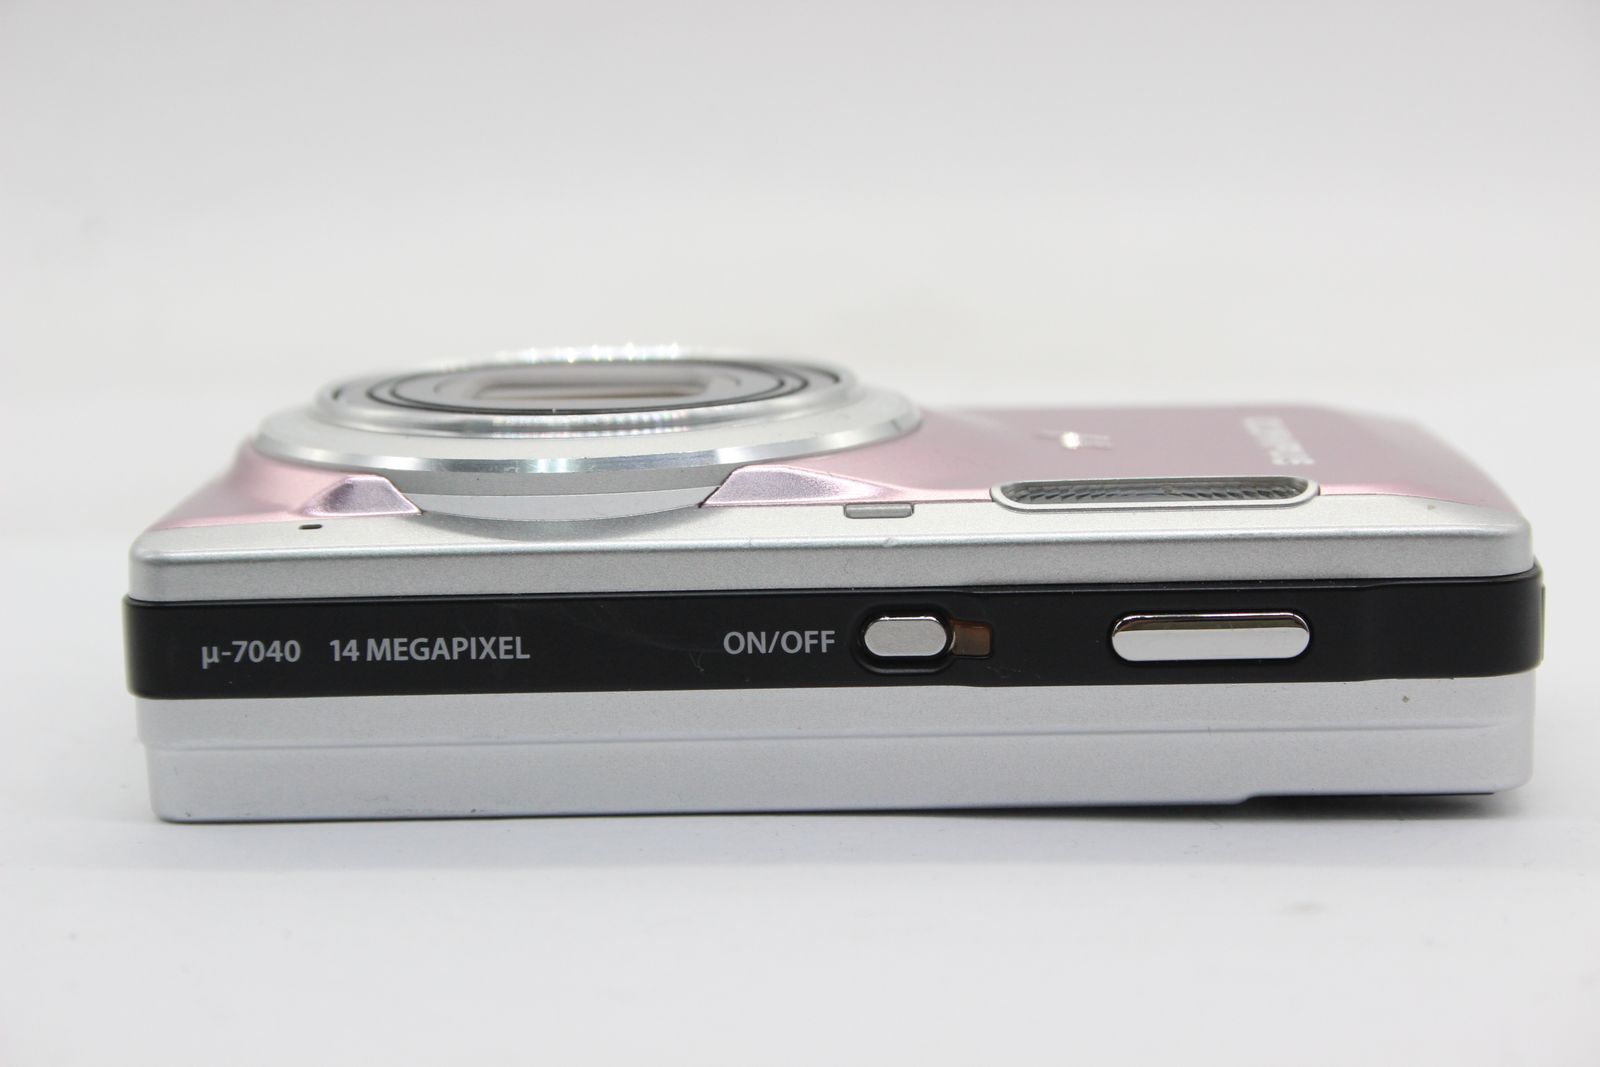 オリンパス デジカメ μ-7040 14megapixel - デジタルカメラ